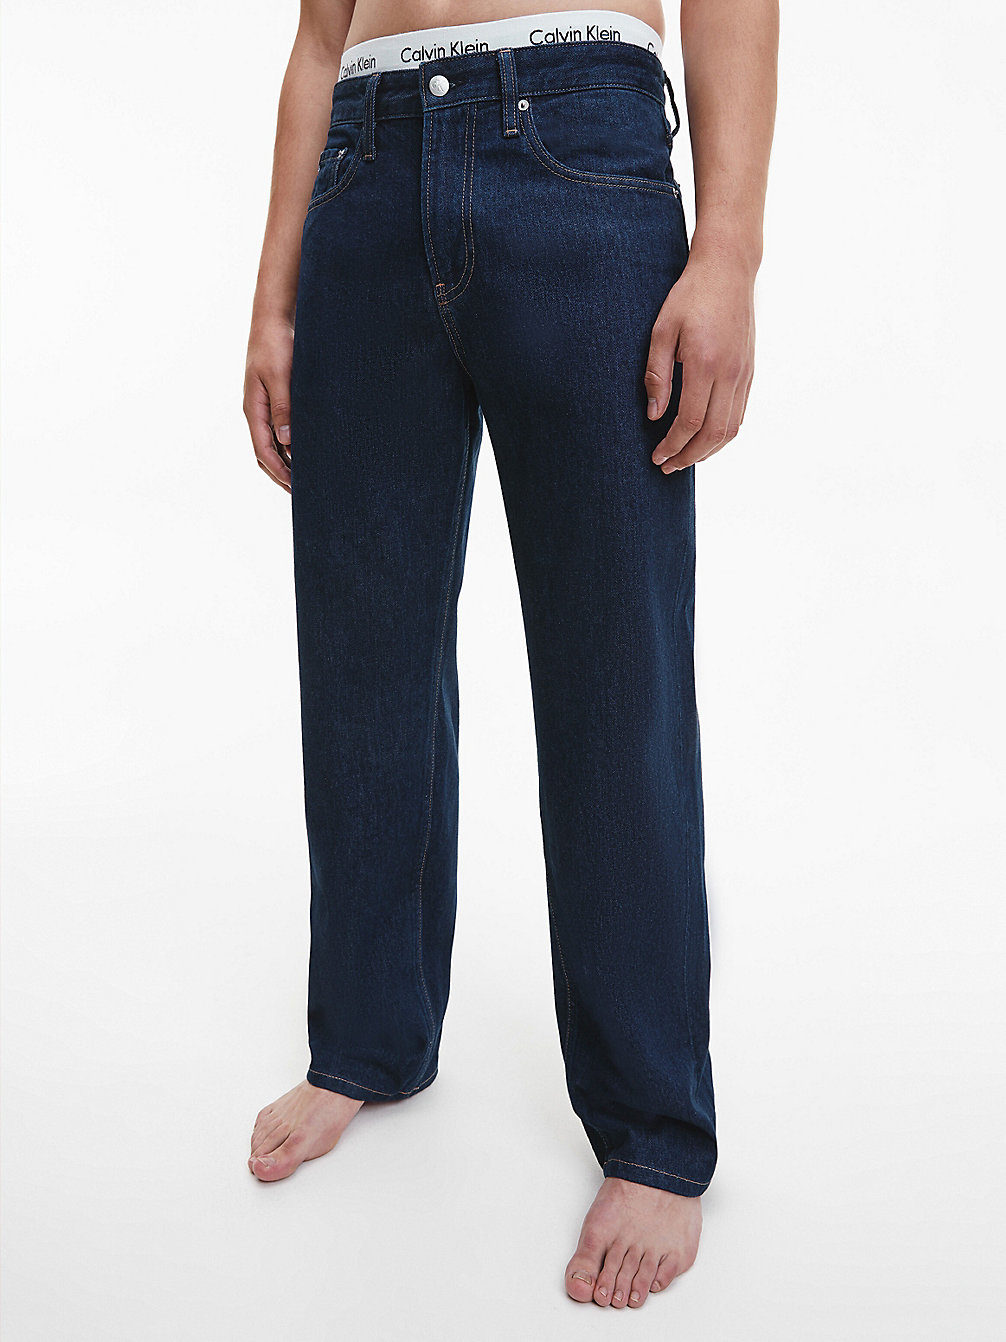 DENIM RINSE 90's Straight Jeans undefined Herren Calvin Klein